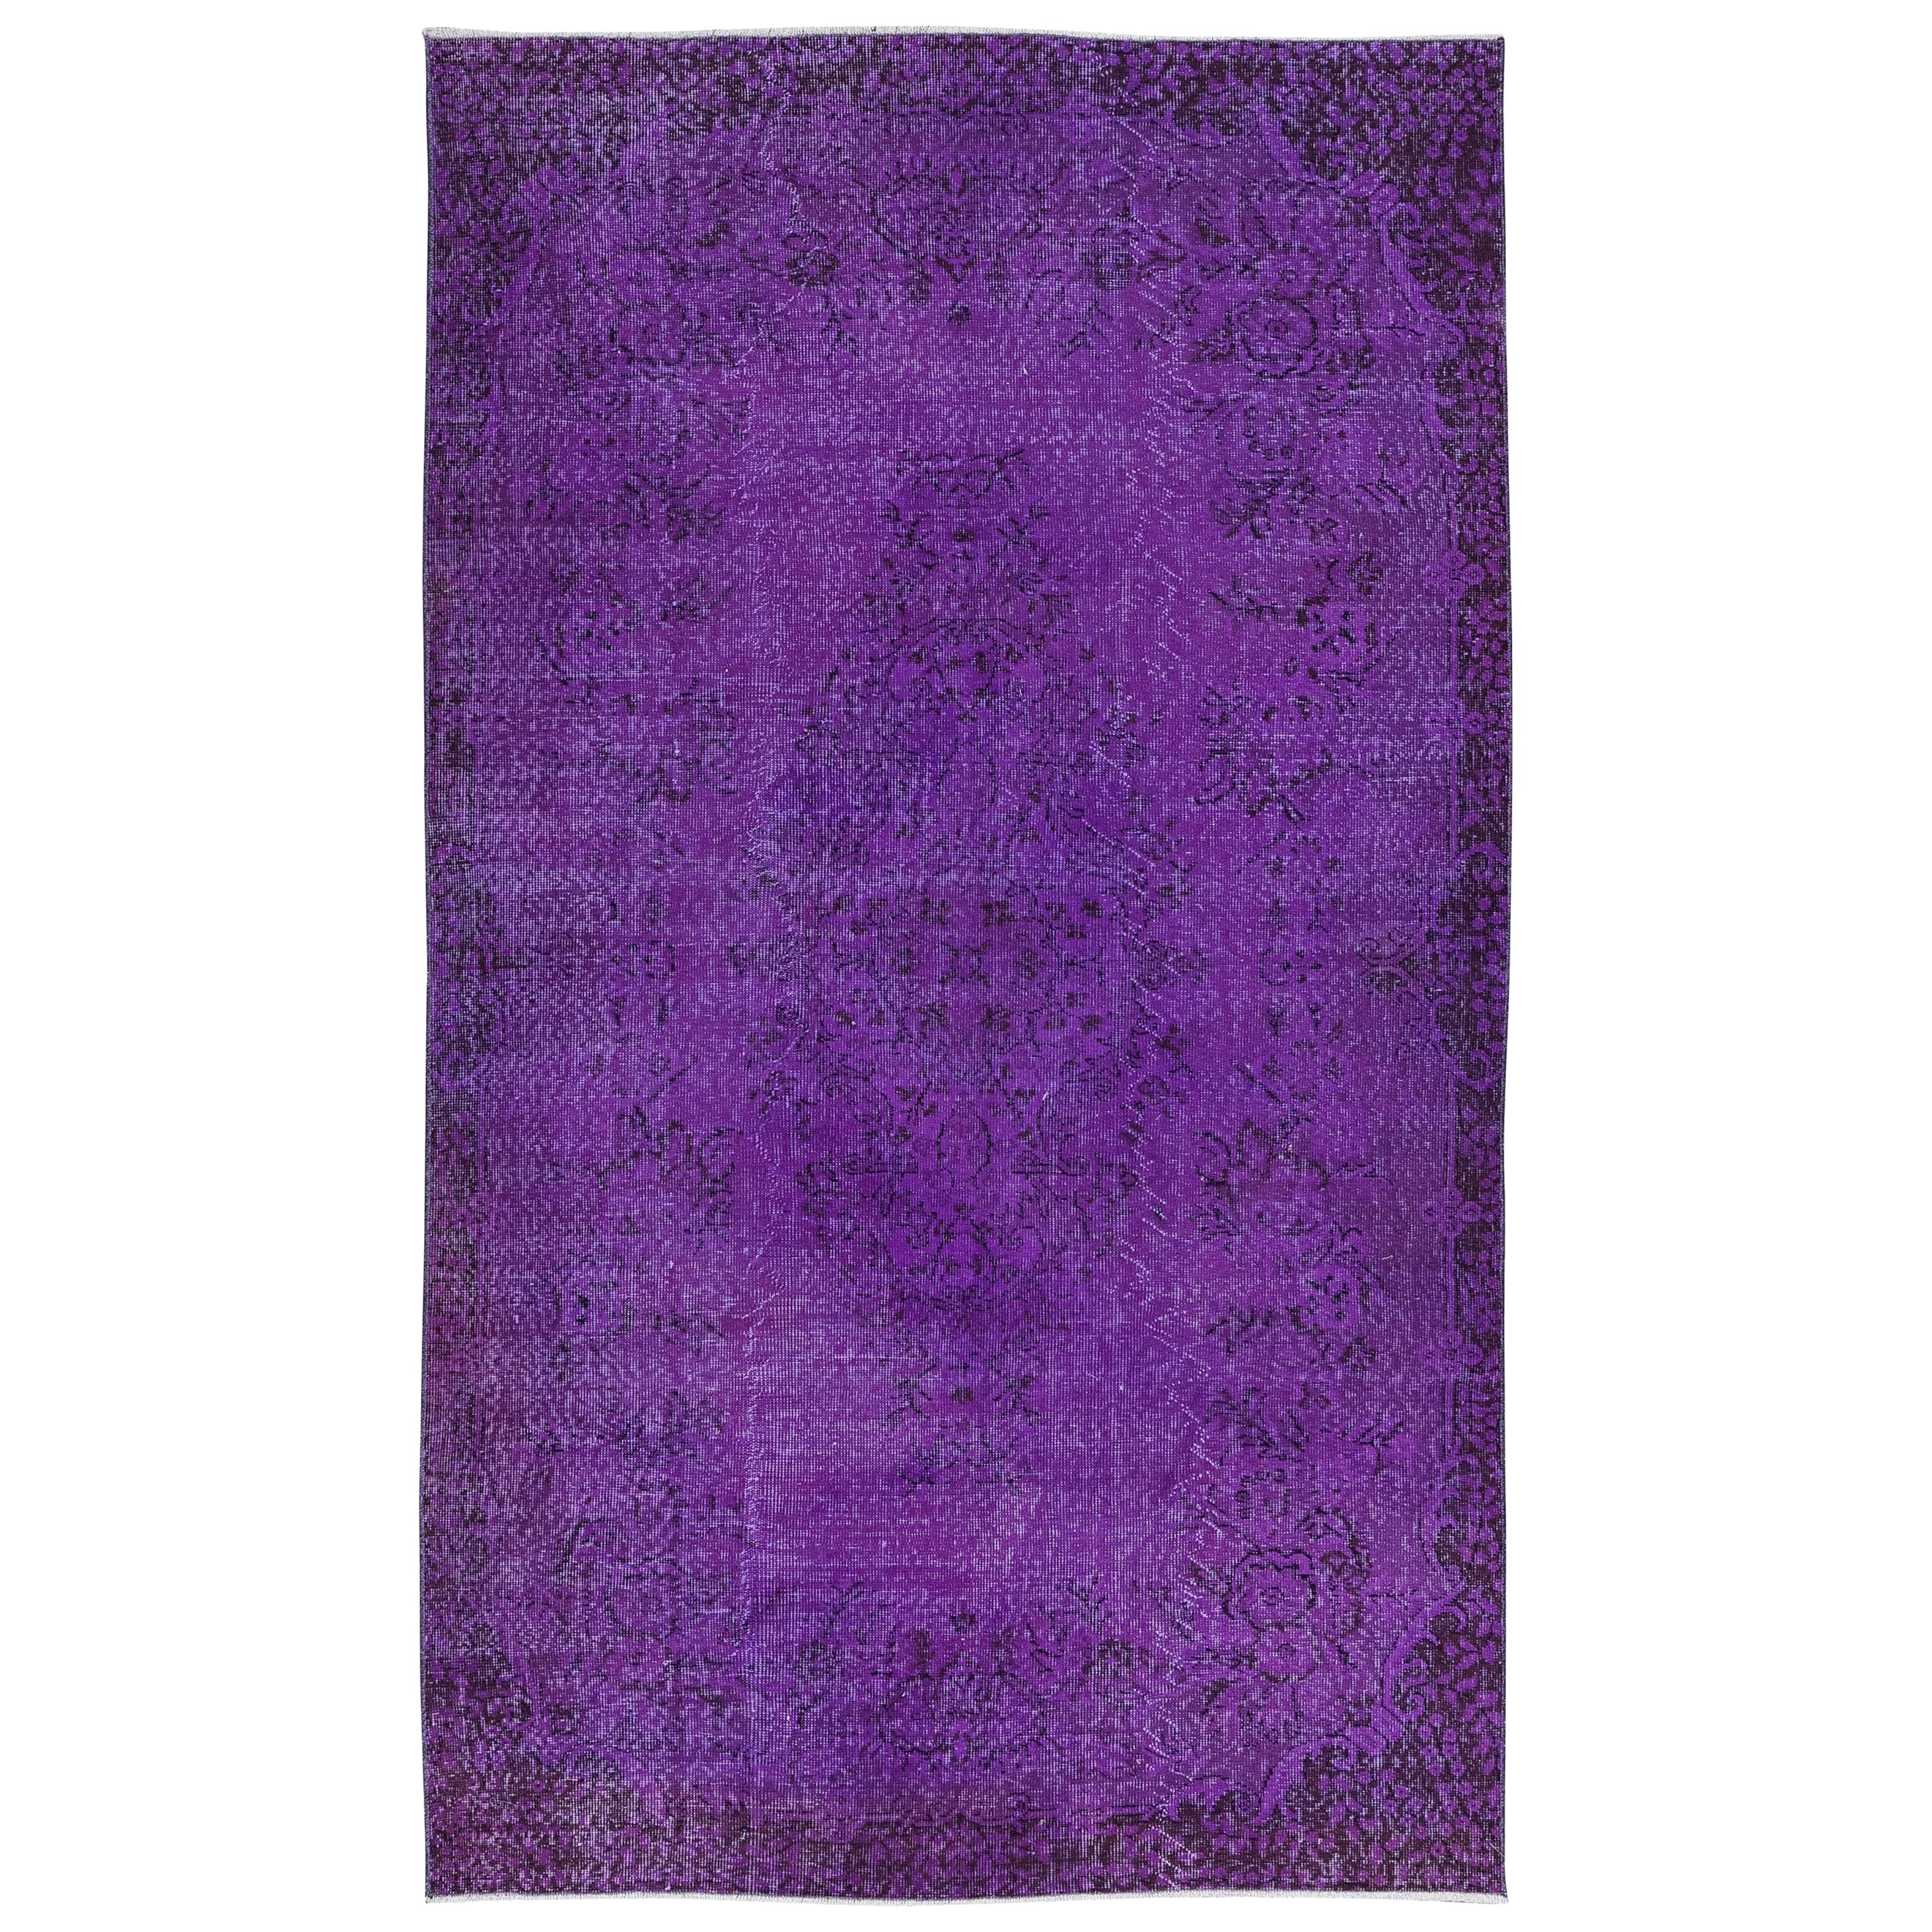 Moderner violett-lila Teppich 5.3x9 Ft, handgefertigter türkischer Teppich, böhmisches Wohndekor